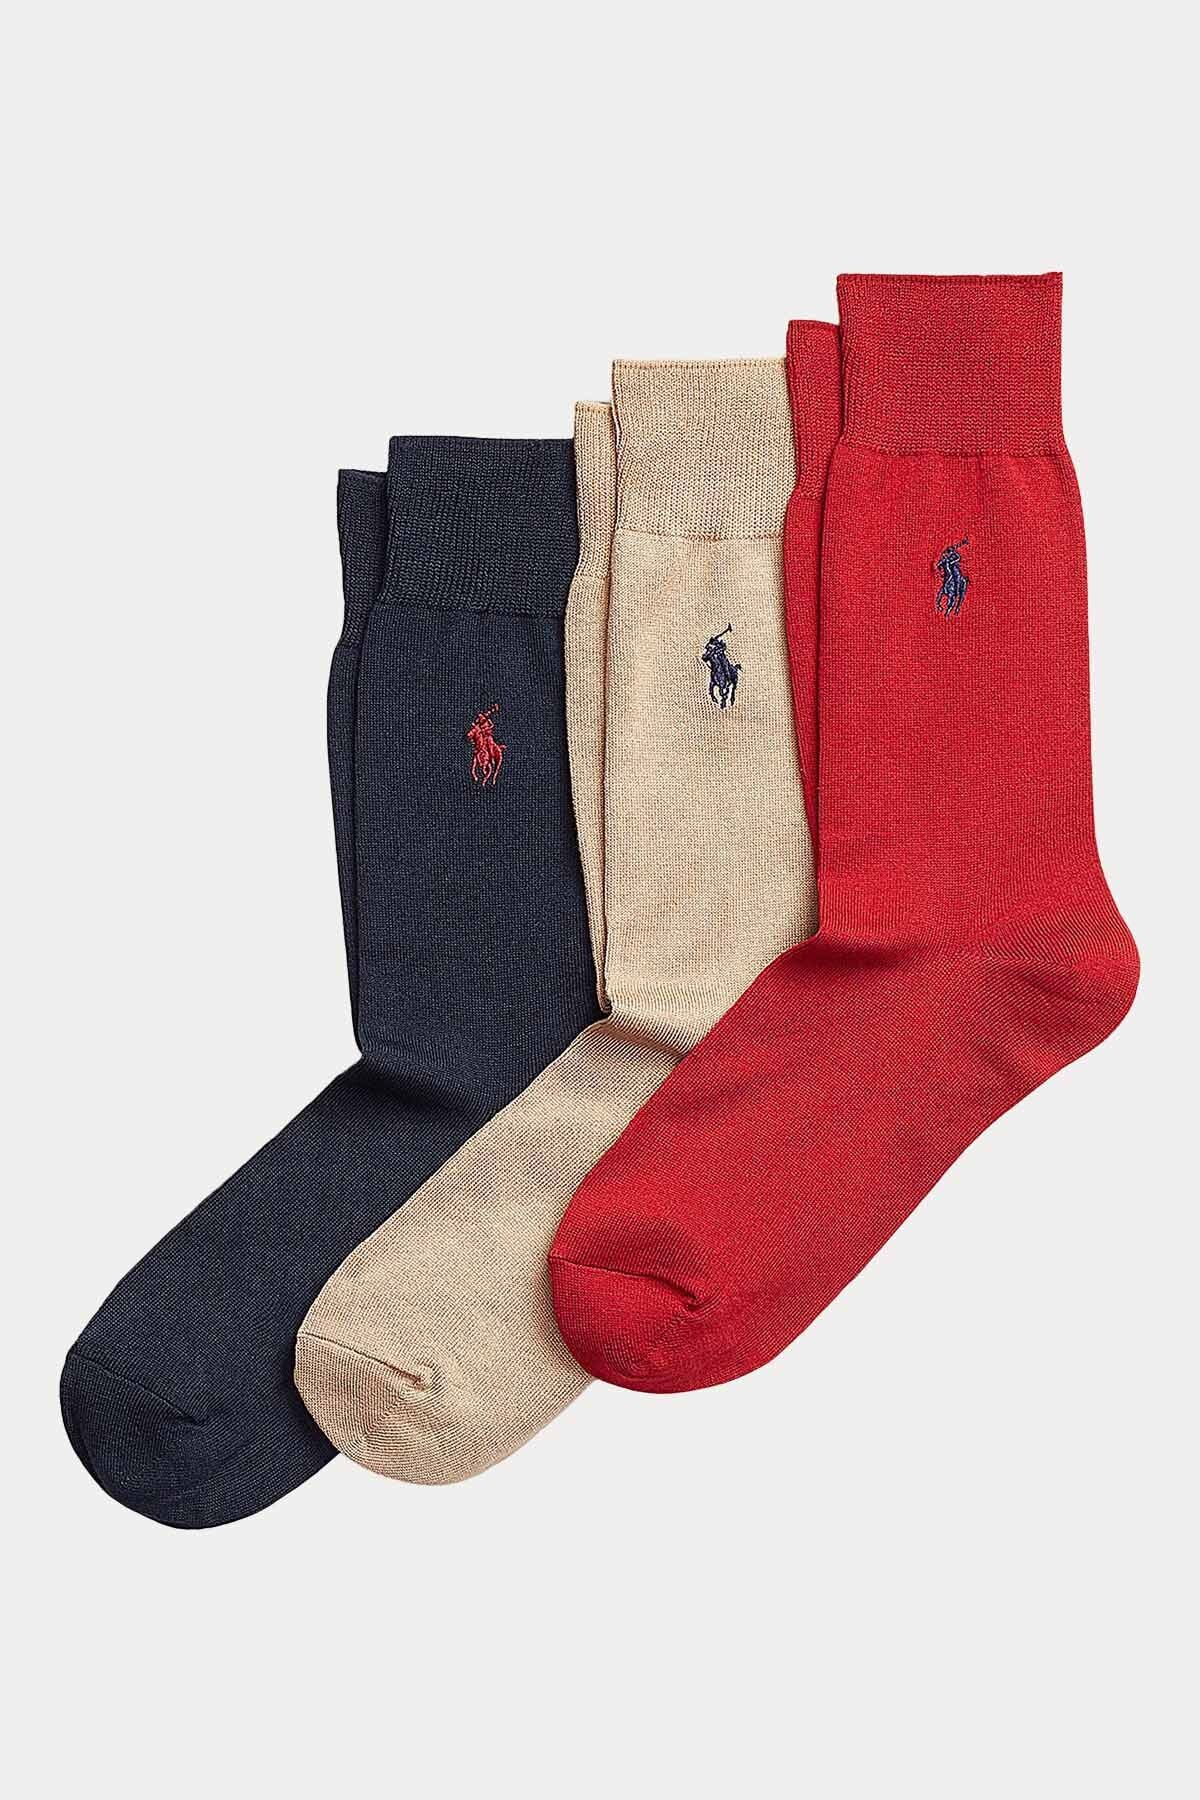 Ralph Lauren Iskoç Ipliği 3'lü Paket Çorap 43-46 / Çok Renkli